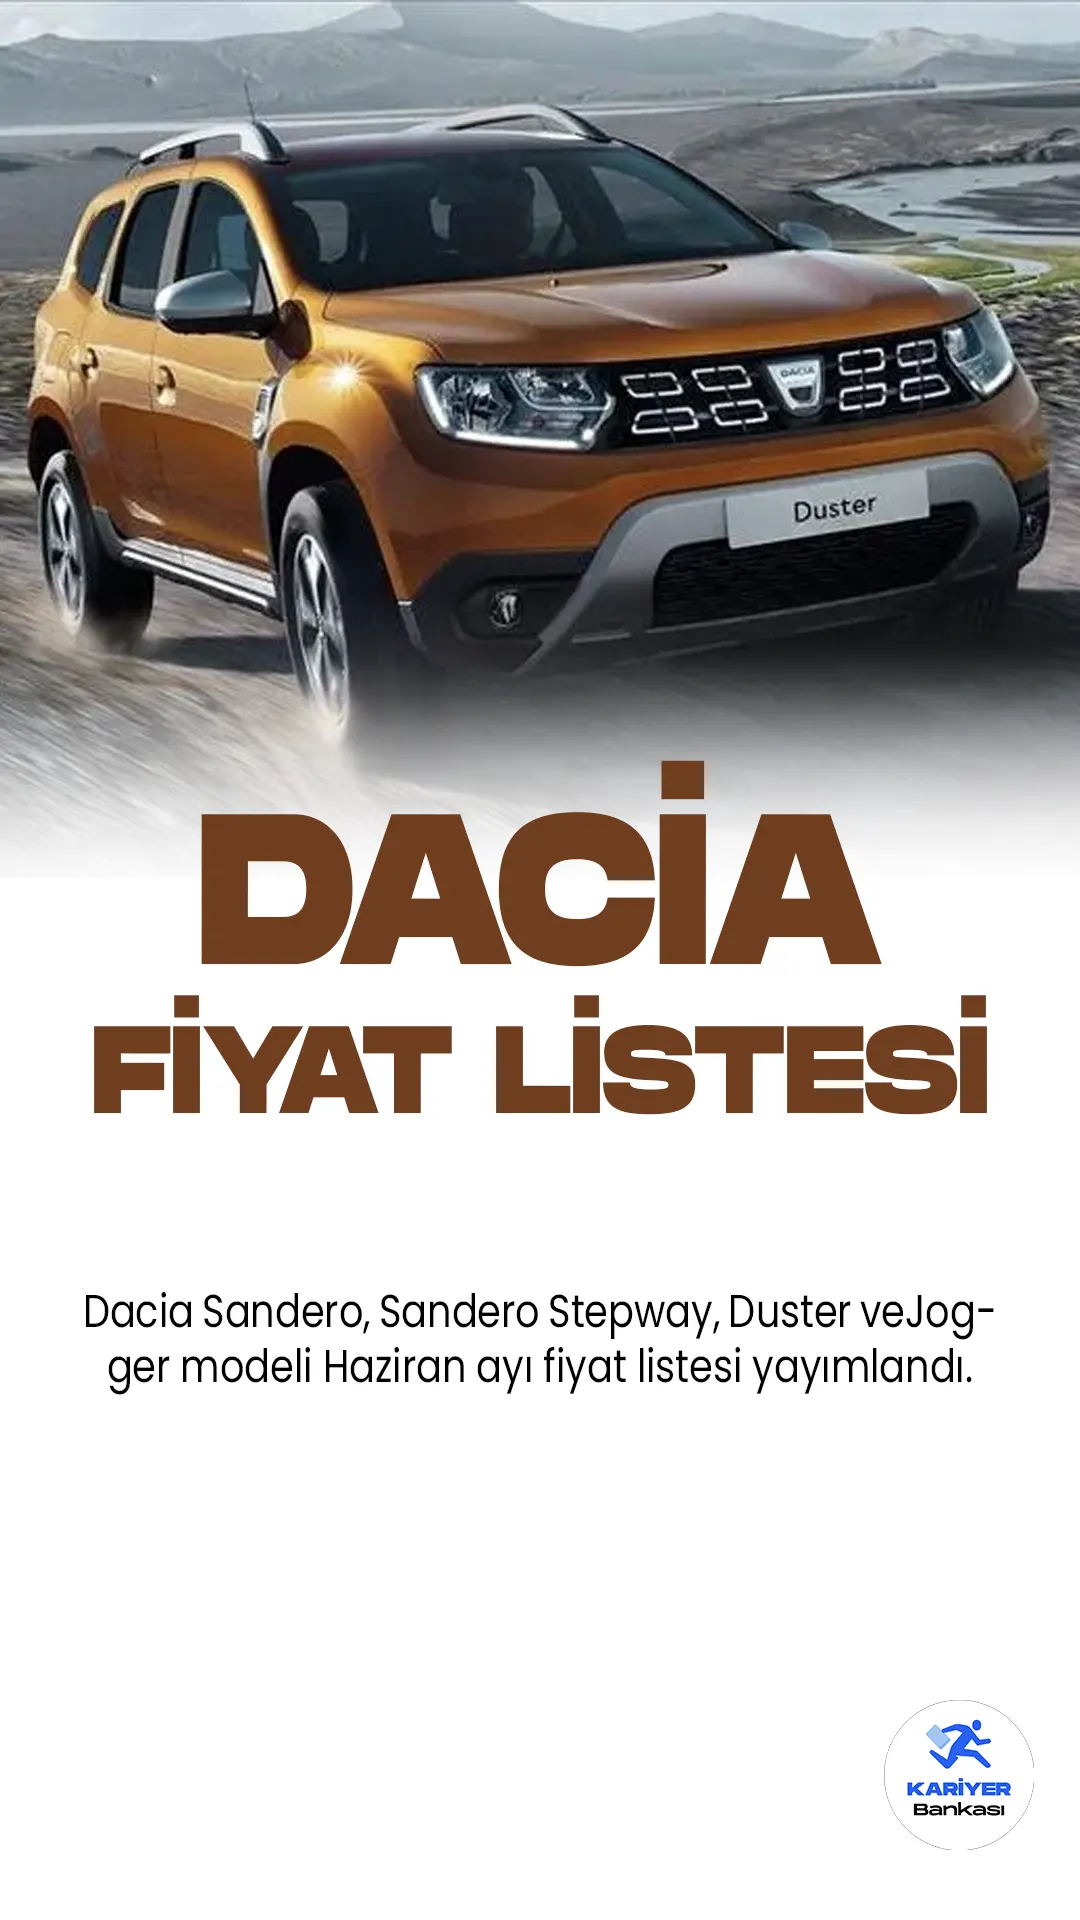 Dacia Haziran 2023 Fiyat Listesi Yayımlandı! Türkiye'de araç sürücüleri tarafından oldukça sevilen ve popüler olan Dacia, her ay fiyat listelerini güncellemeye devam ediyor.